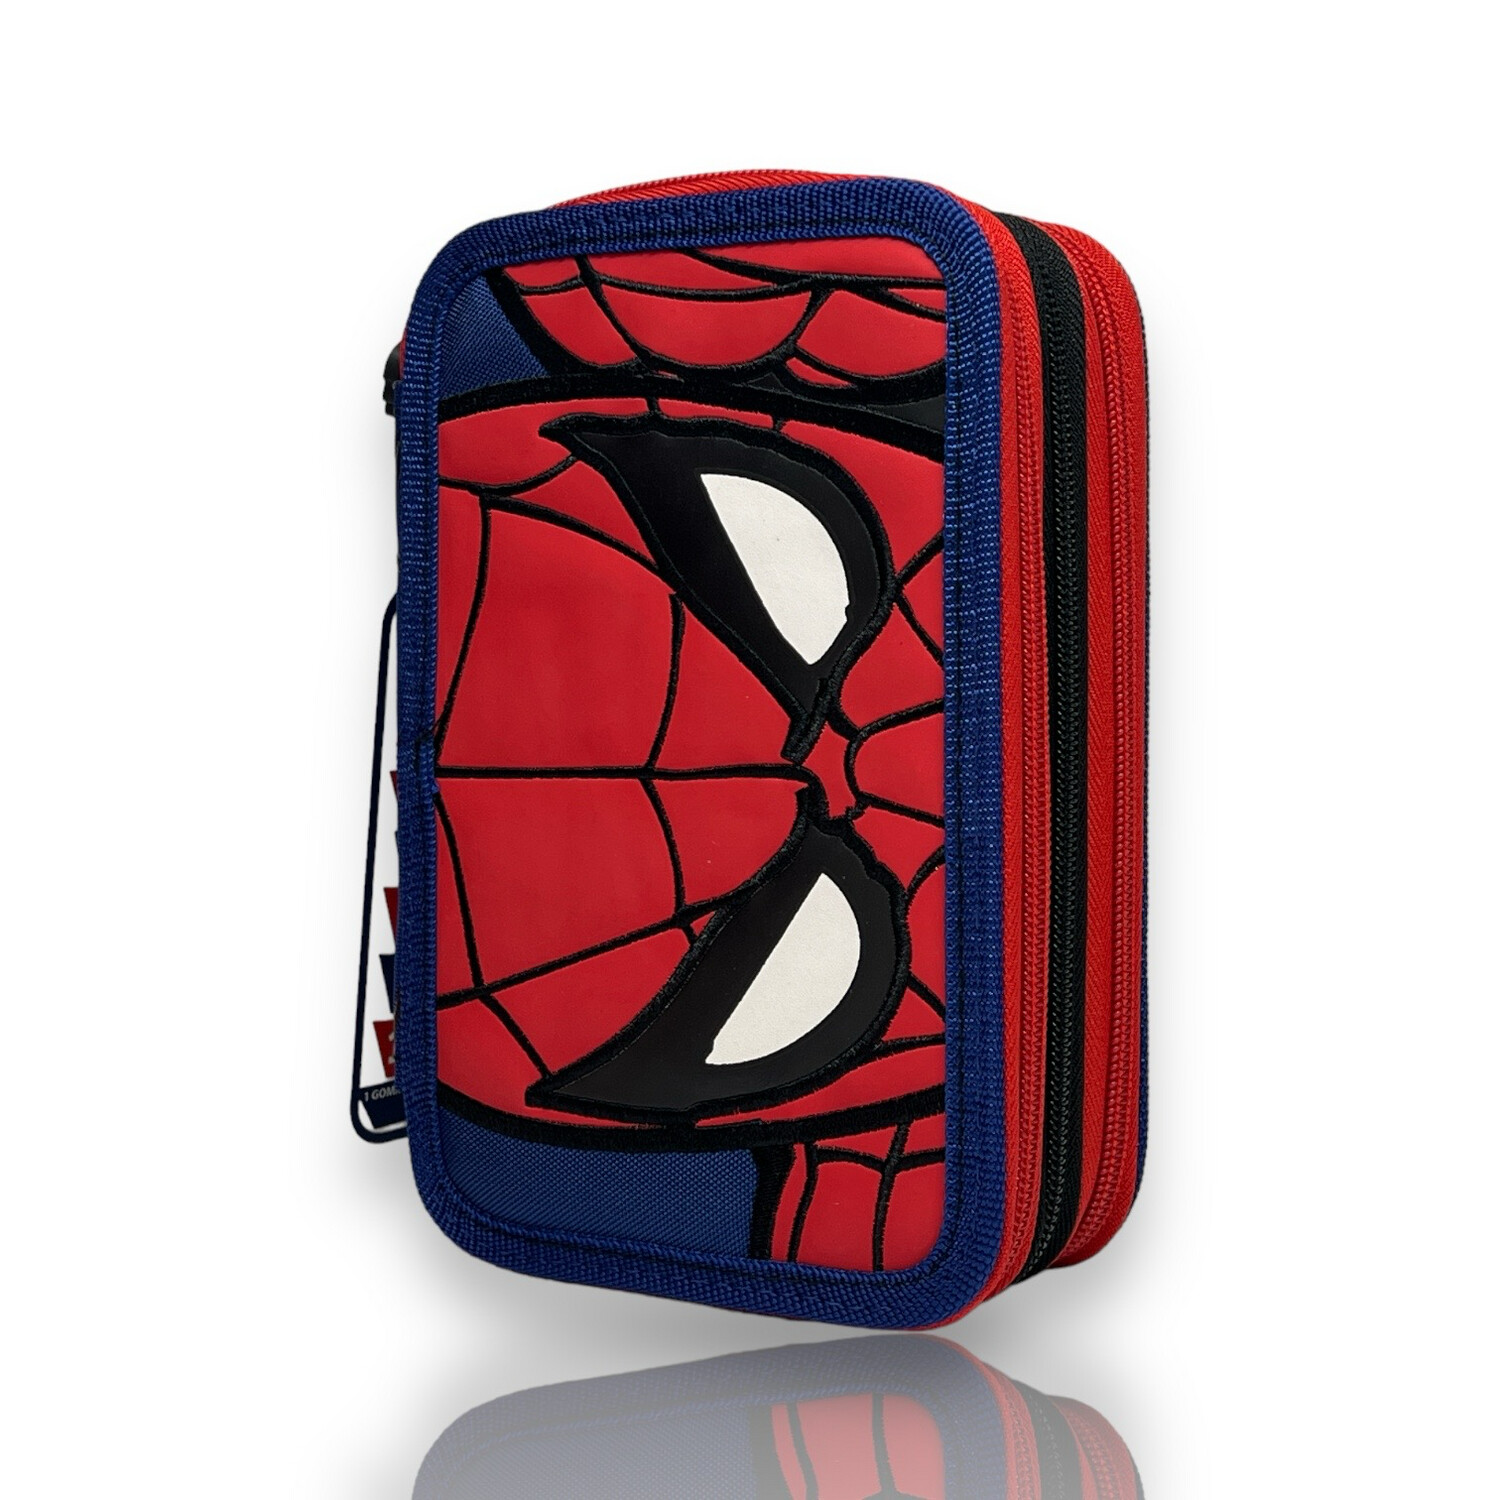 Astuccio Spider-Man 3 scomparti e accessori: organizza la scuola con lo stile di Spider-Man!